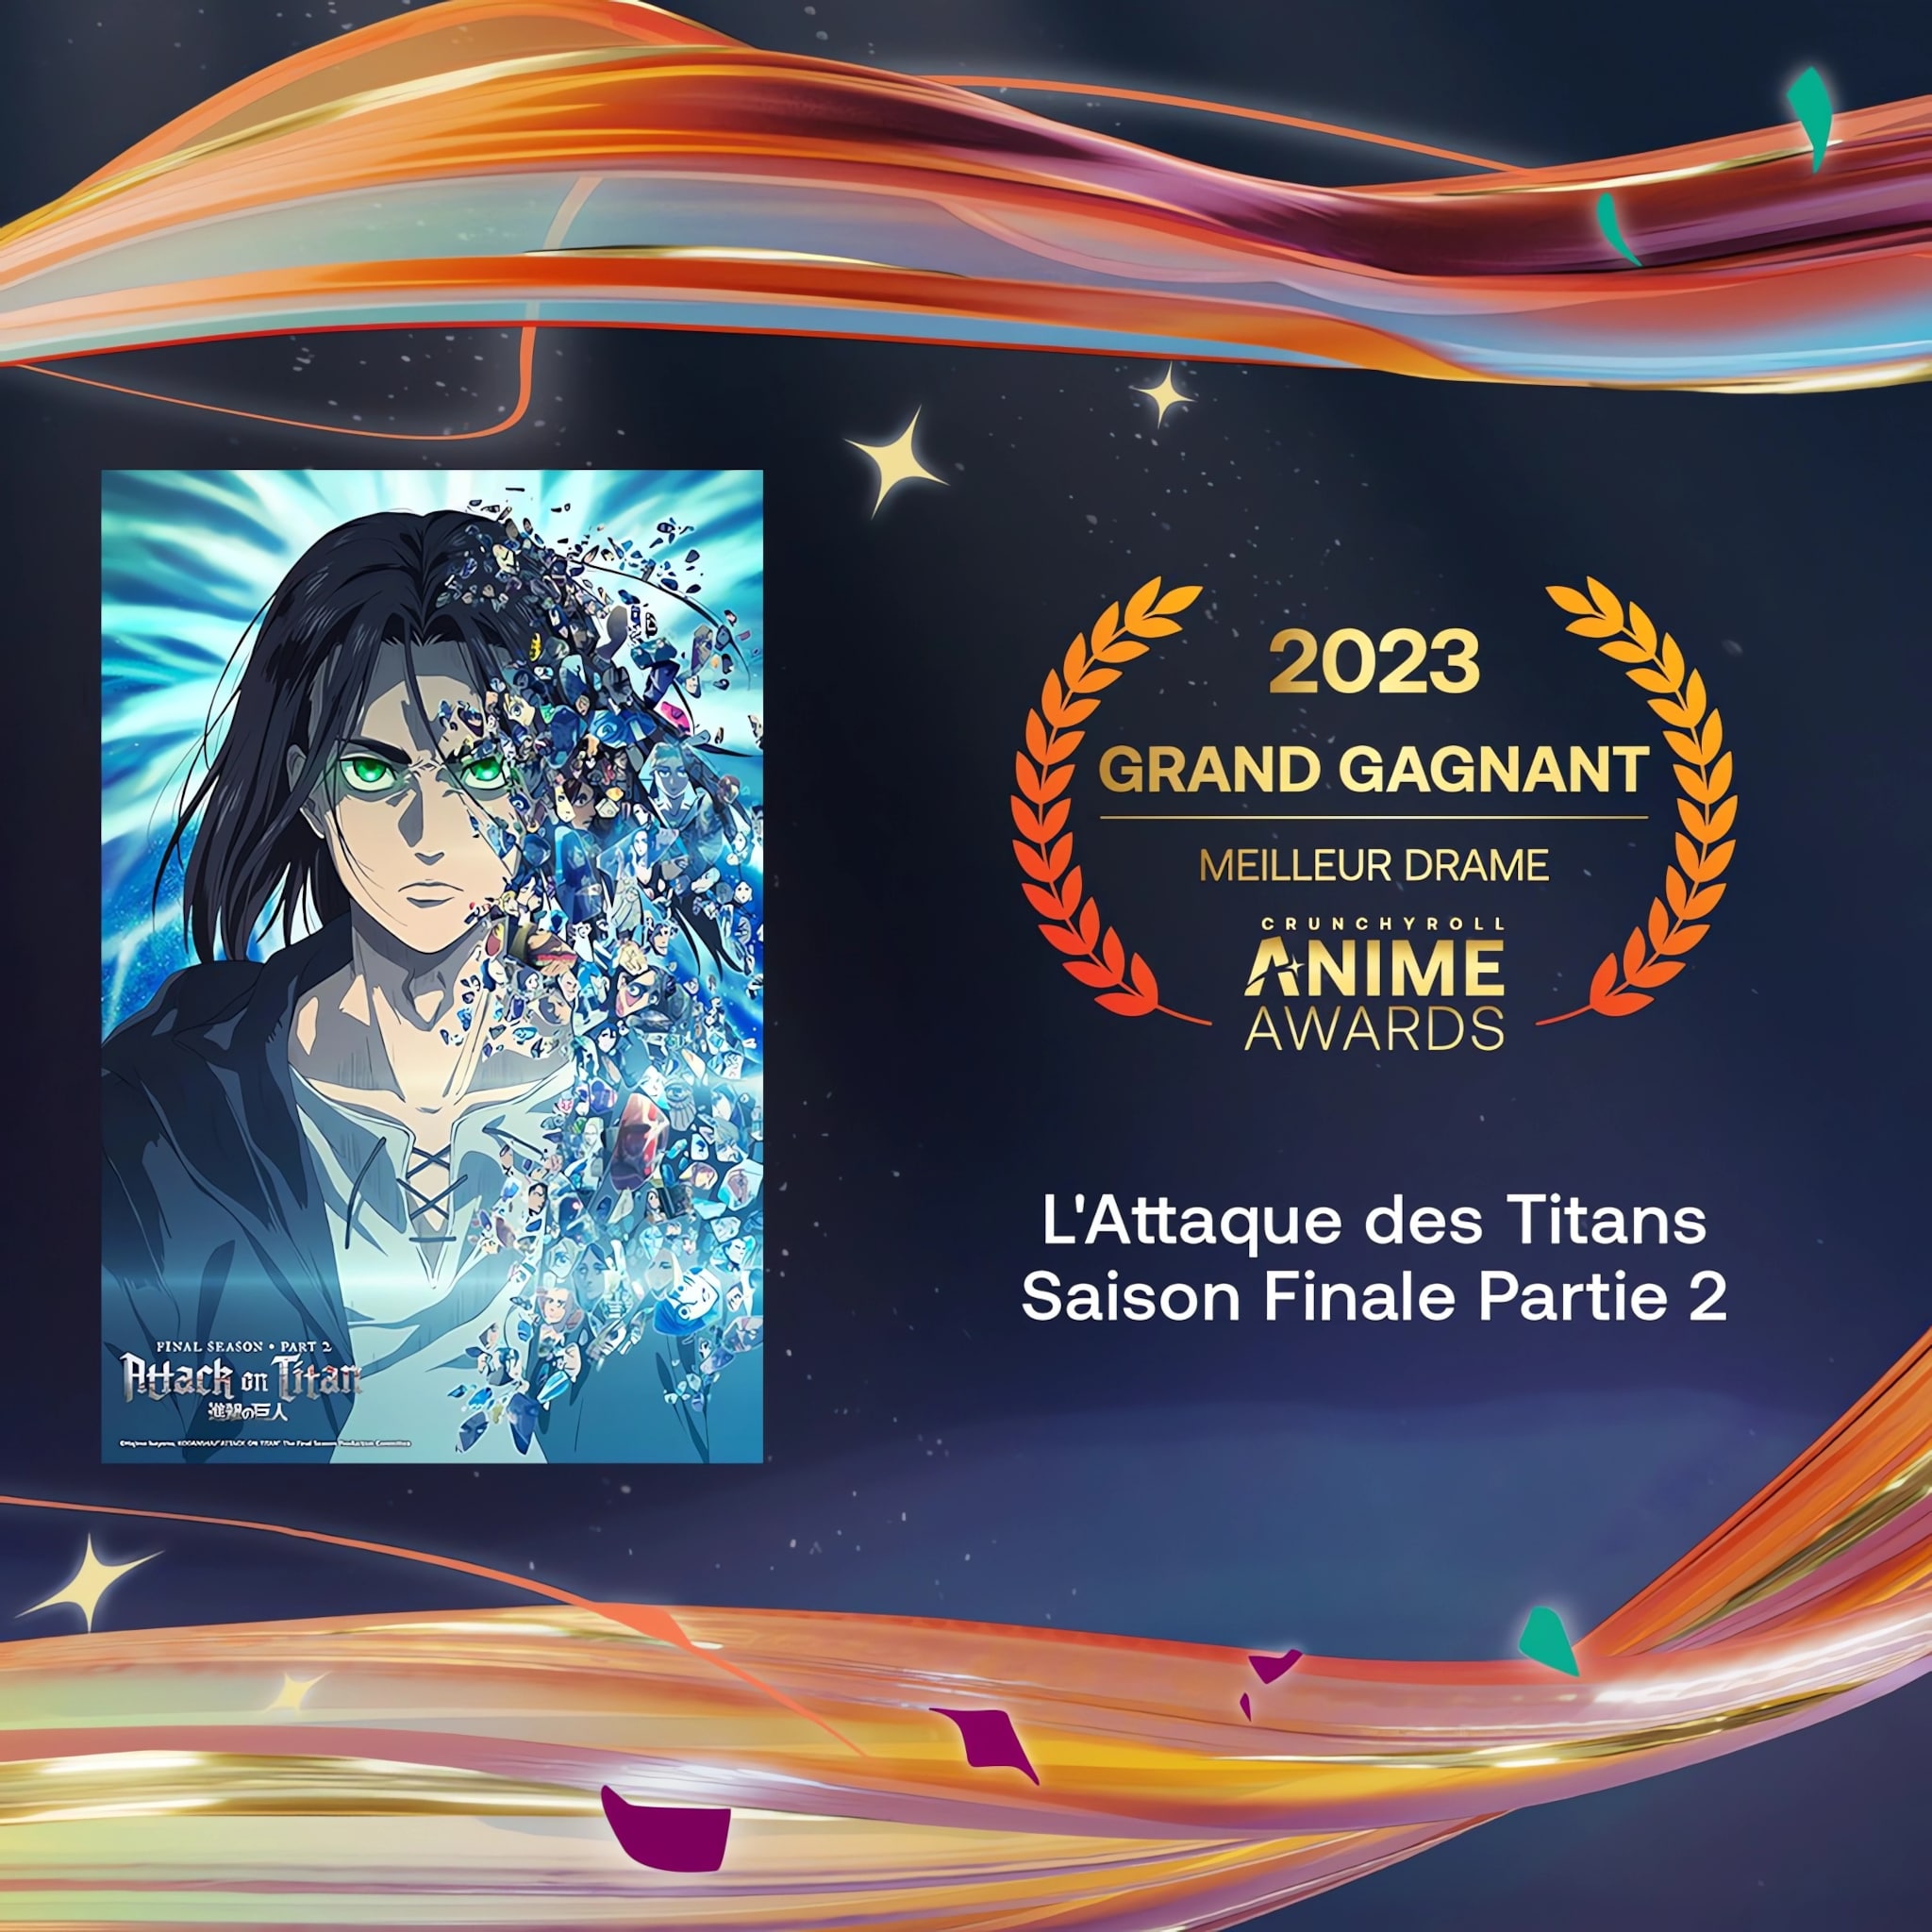 Prix du meilleur drame pour les Crunchyroll Anime Awards 2023